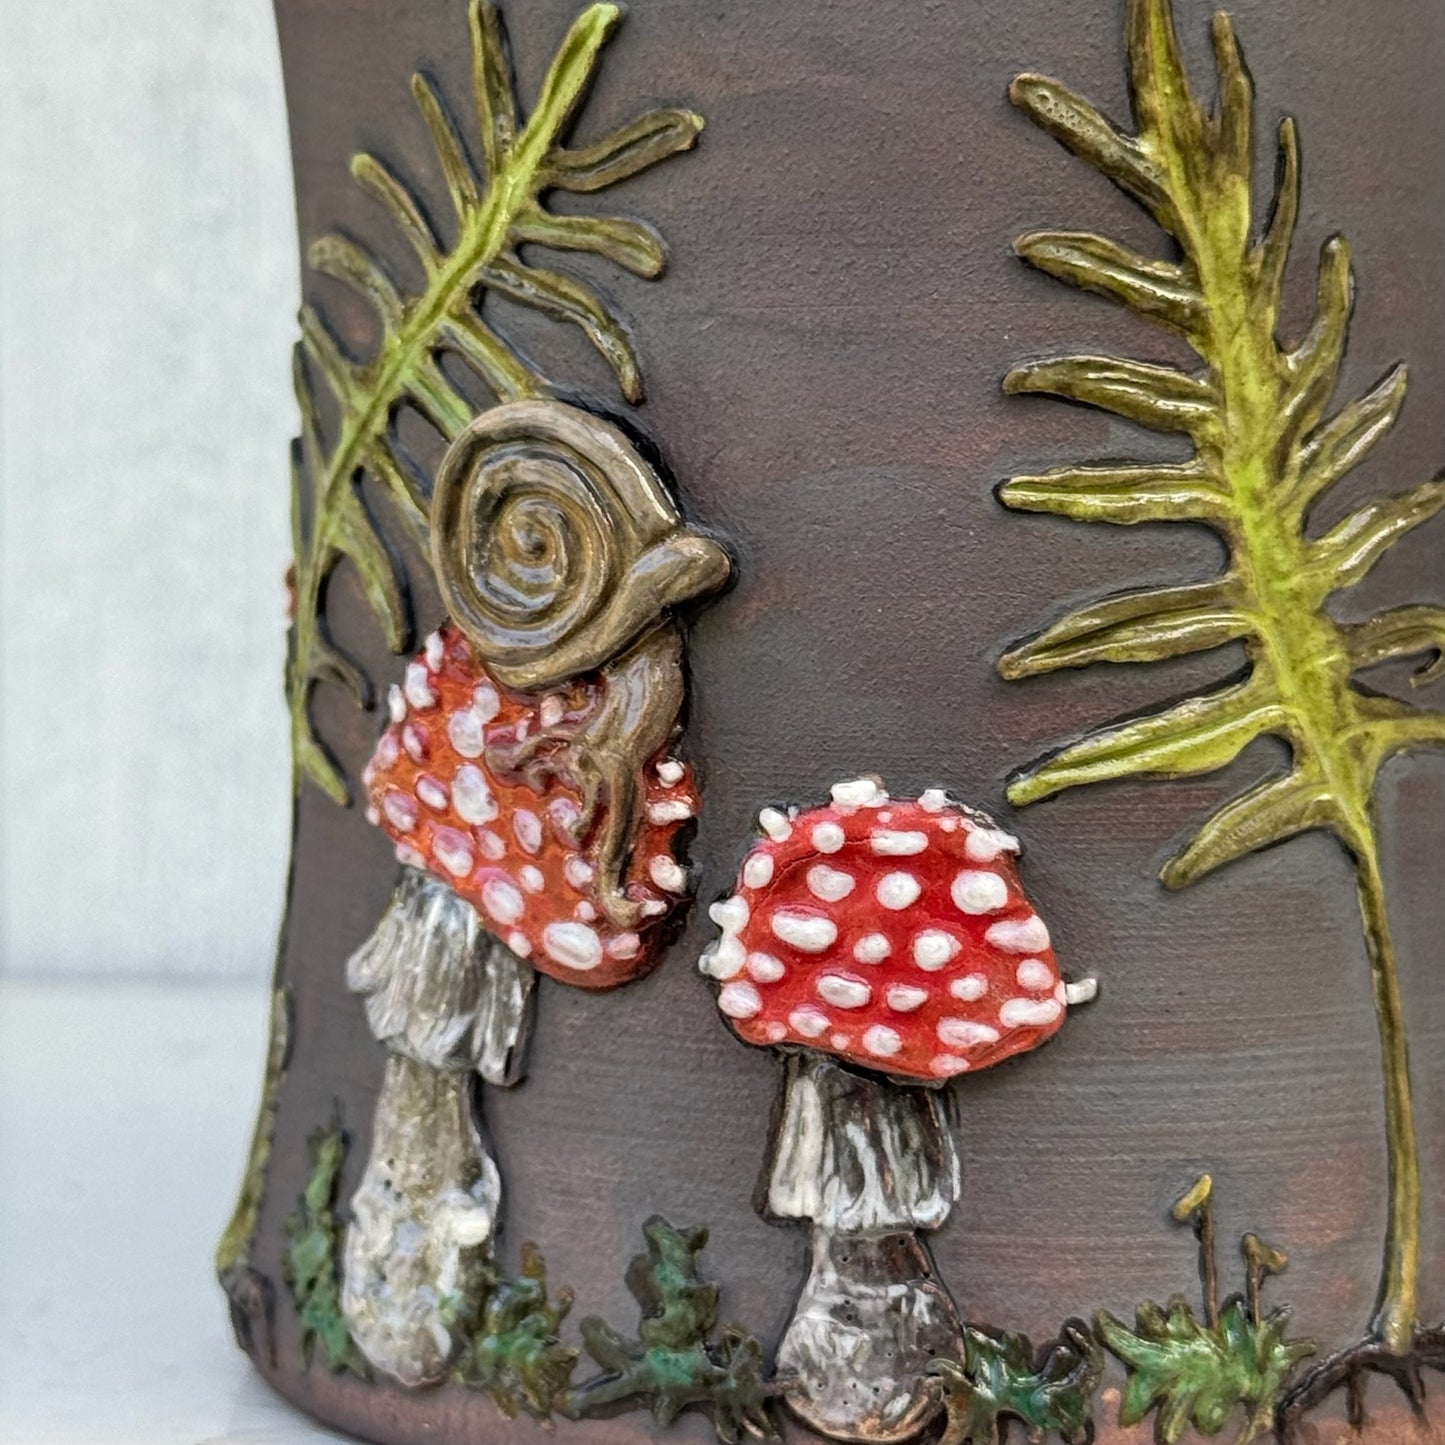 Mushroom & Toad Botanical Mug #4049